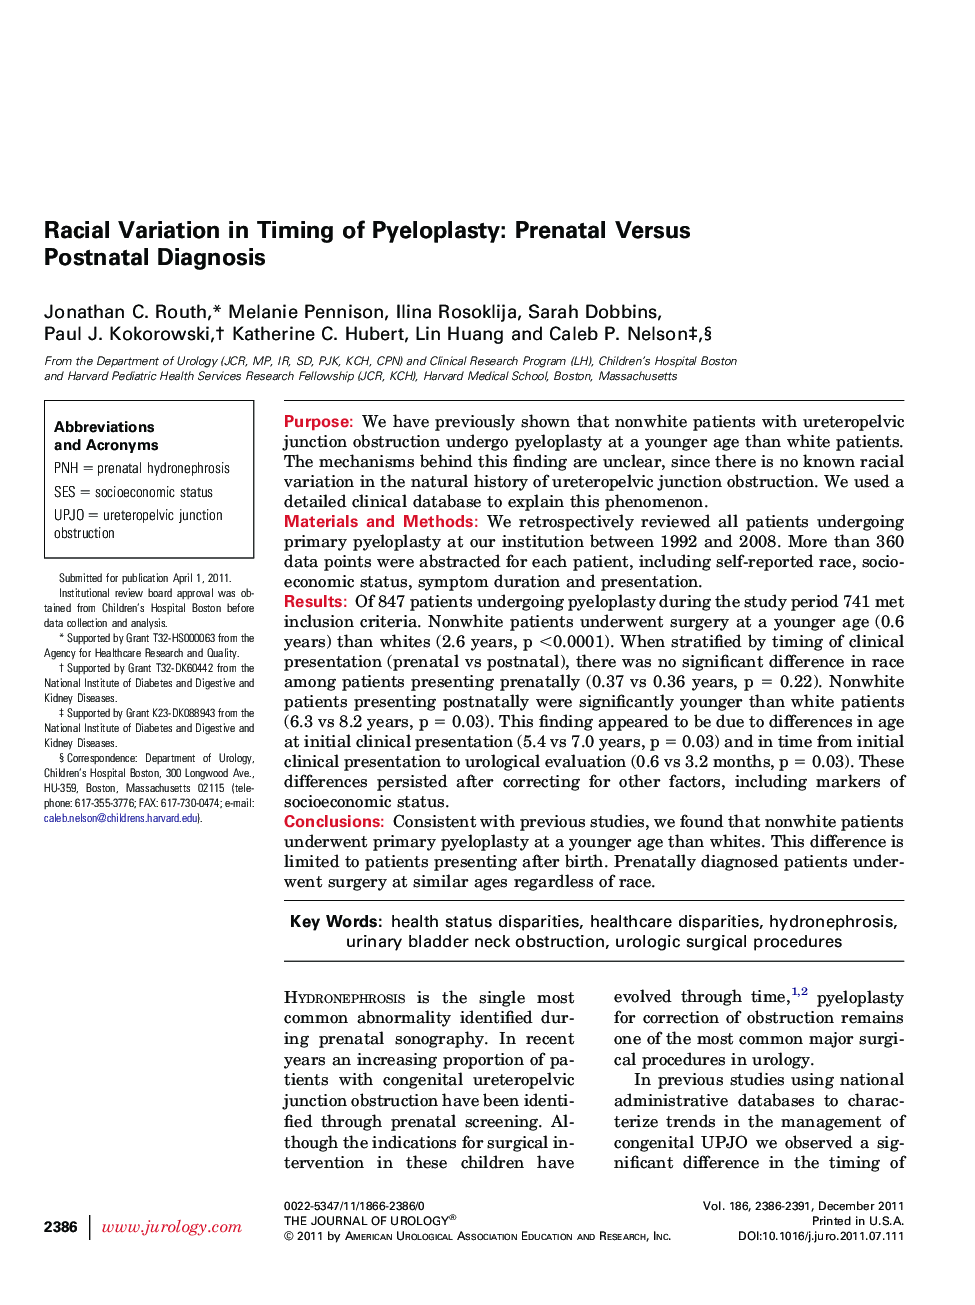 Racial Variation in Timing of Pyeloplasty: Prenatal Versus Postnatal Diagnosis